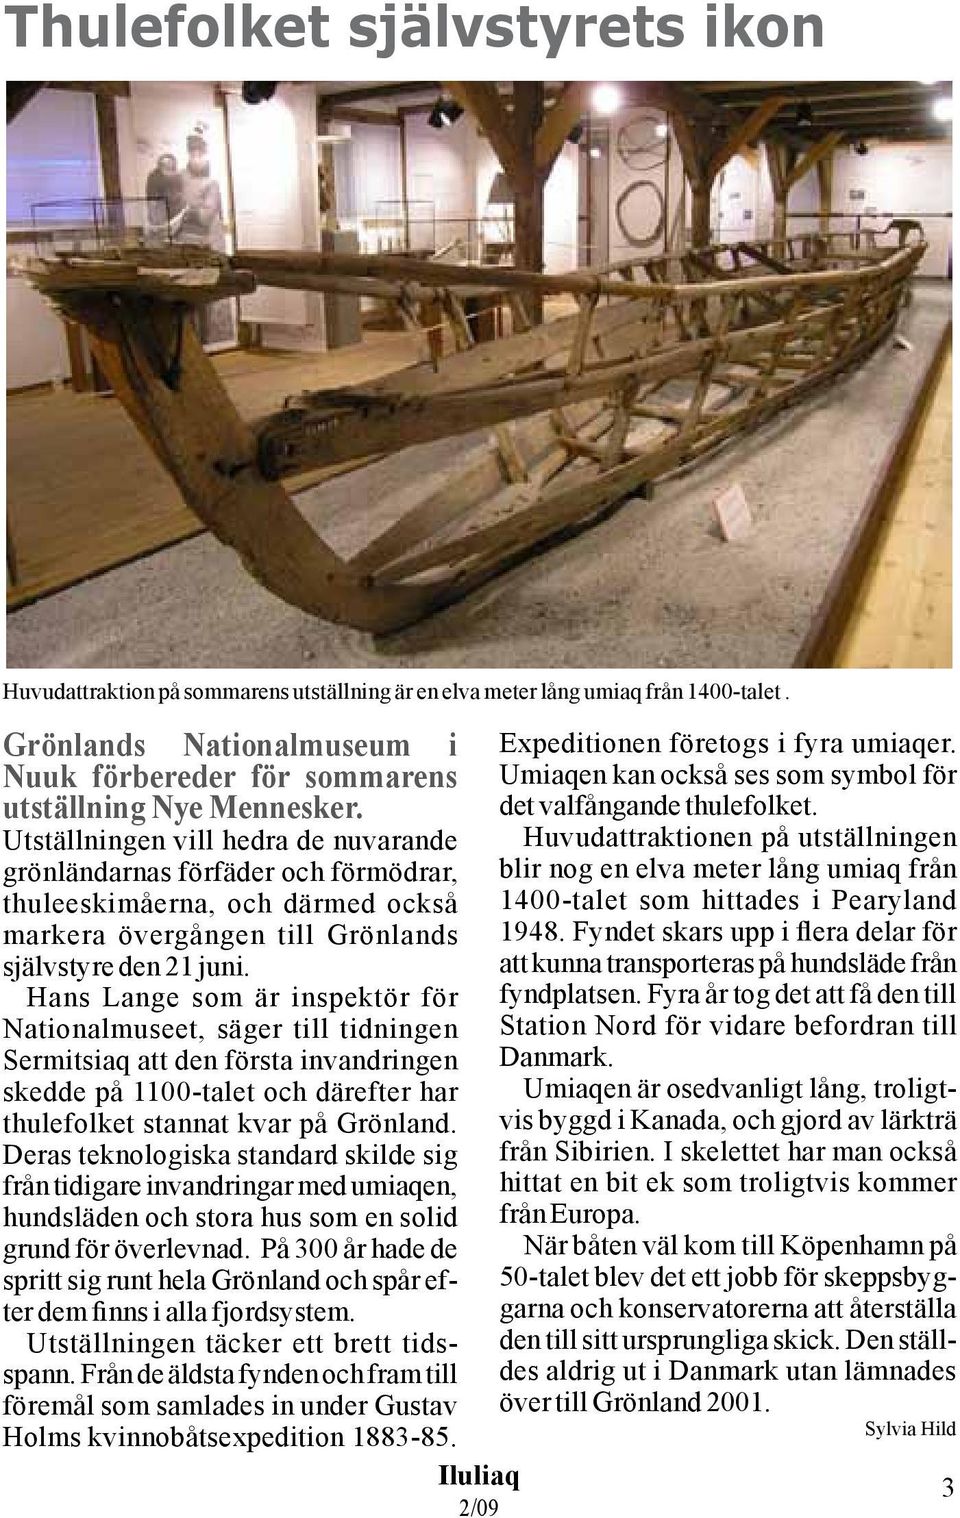 Hans Lange som är inspektör för Nationalmuseet, säger till tidningen Sermitsiaq att den första invandringen skedde på 1100-talet och därefter har thulefolket stannat kvar på Grönland.